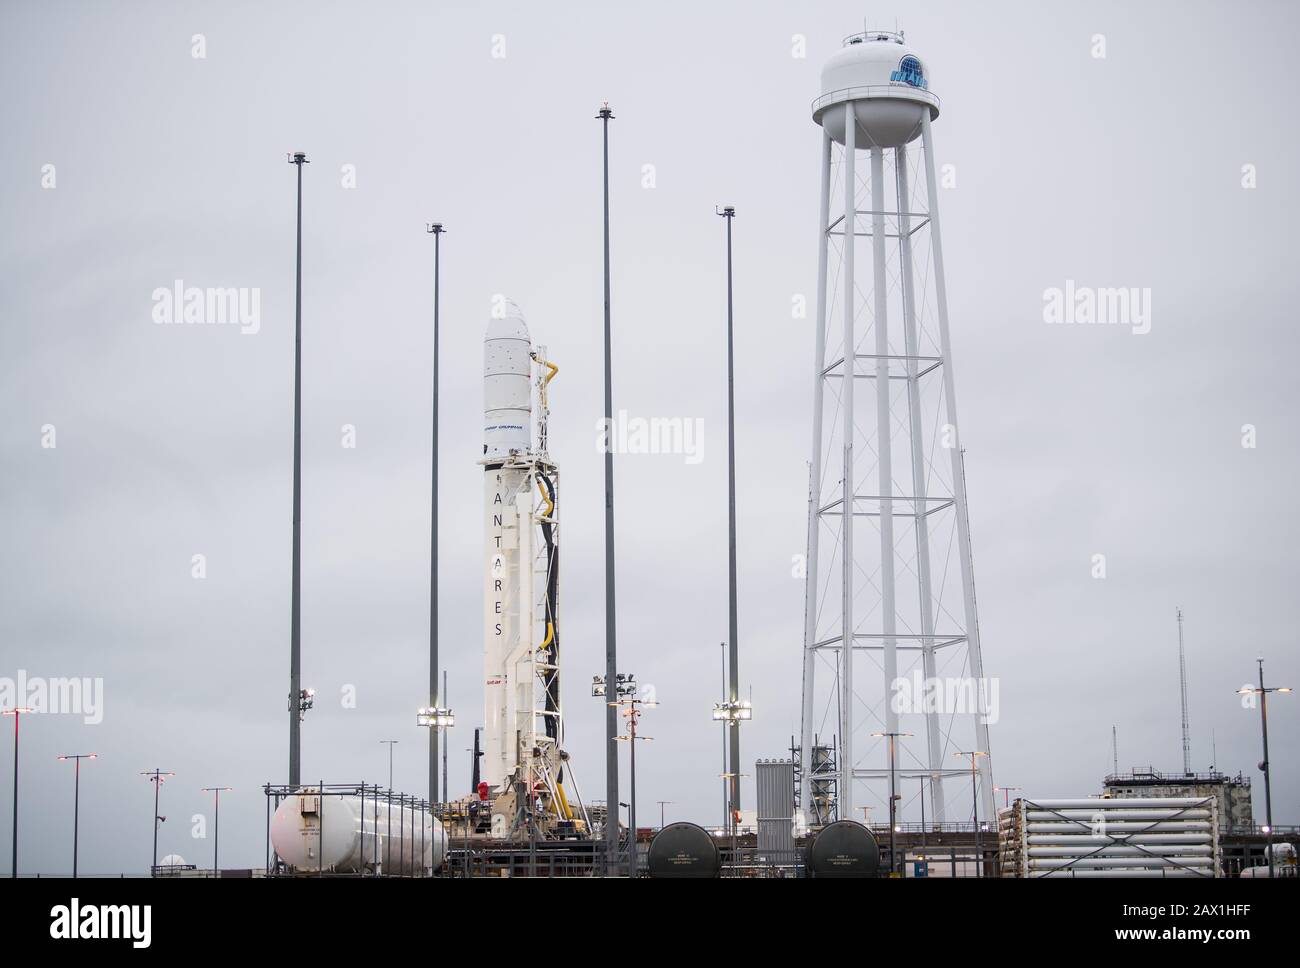 El cohete Northrop Grumman Antares, con la nave espacial Cygnus reupply a bordo, se traslada a la posición de lanzamiento en Pad-0A, en la instalación de vuelo Wallops de la NASA, el 5 de febrero de 2020, en Wallops, Virginia. La misión comercial de reabastecimiento de carga transportará 7,500 libras de suministros y equipo a la Estación Espacial Internacional y está programada para su lanzamiento el 9 de febrero. Foto de stock